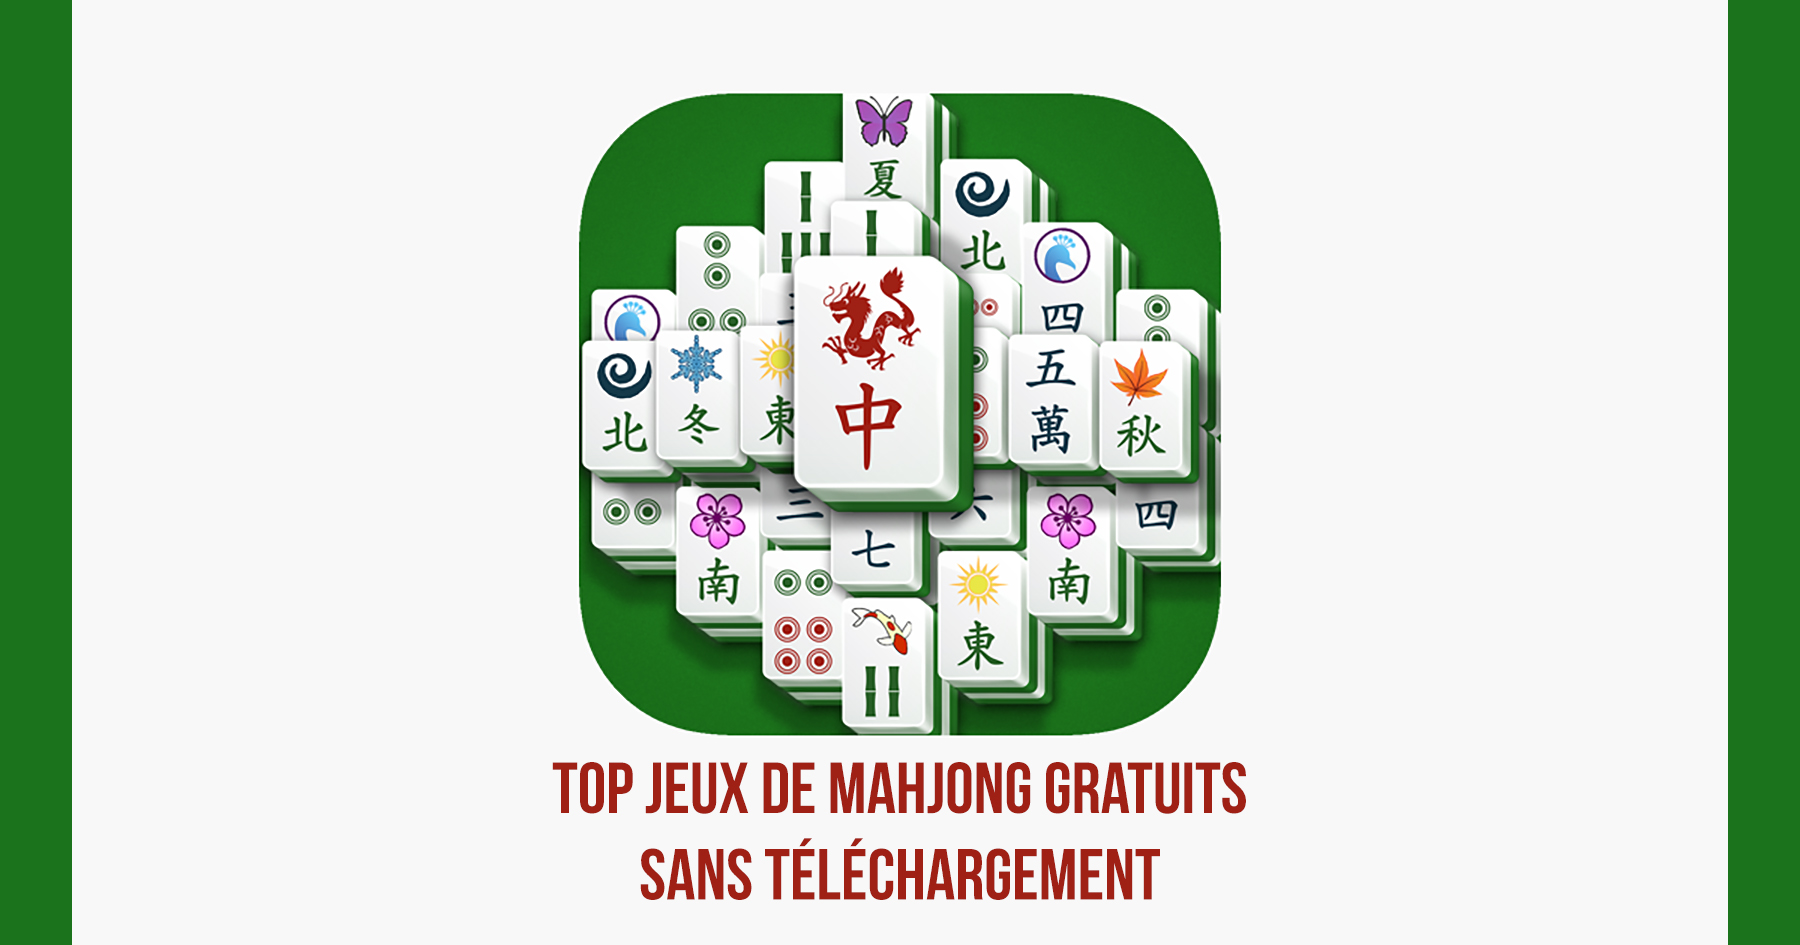 I migliori giochi Mahjong gratuiti senza download (online)